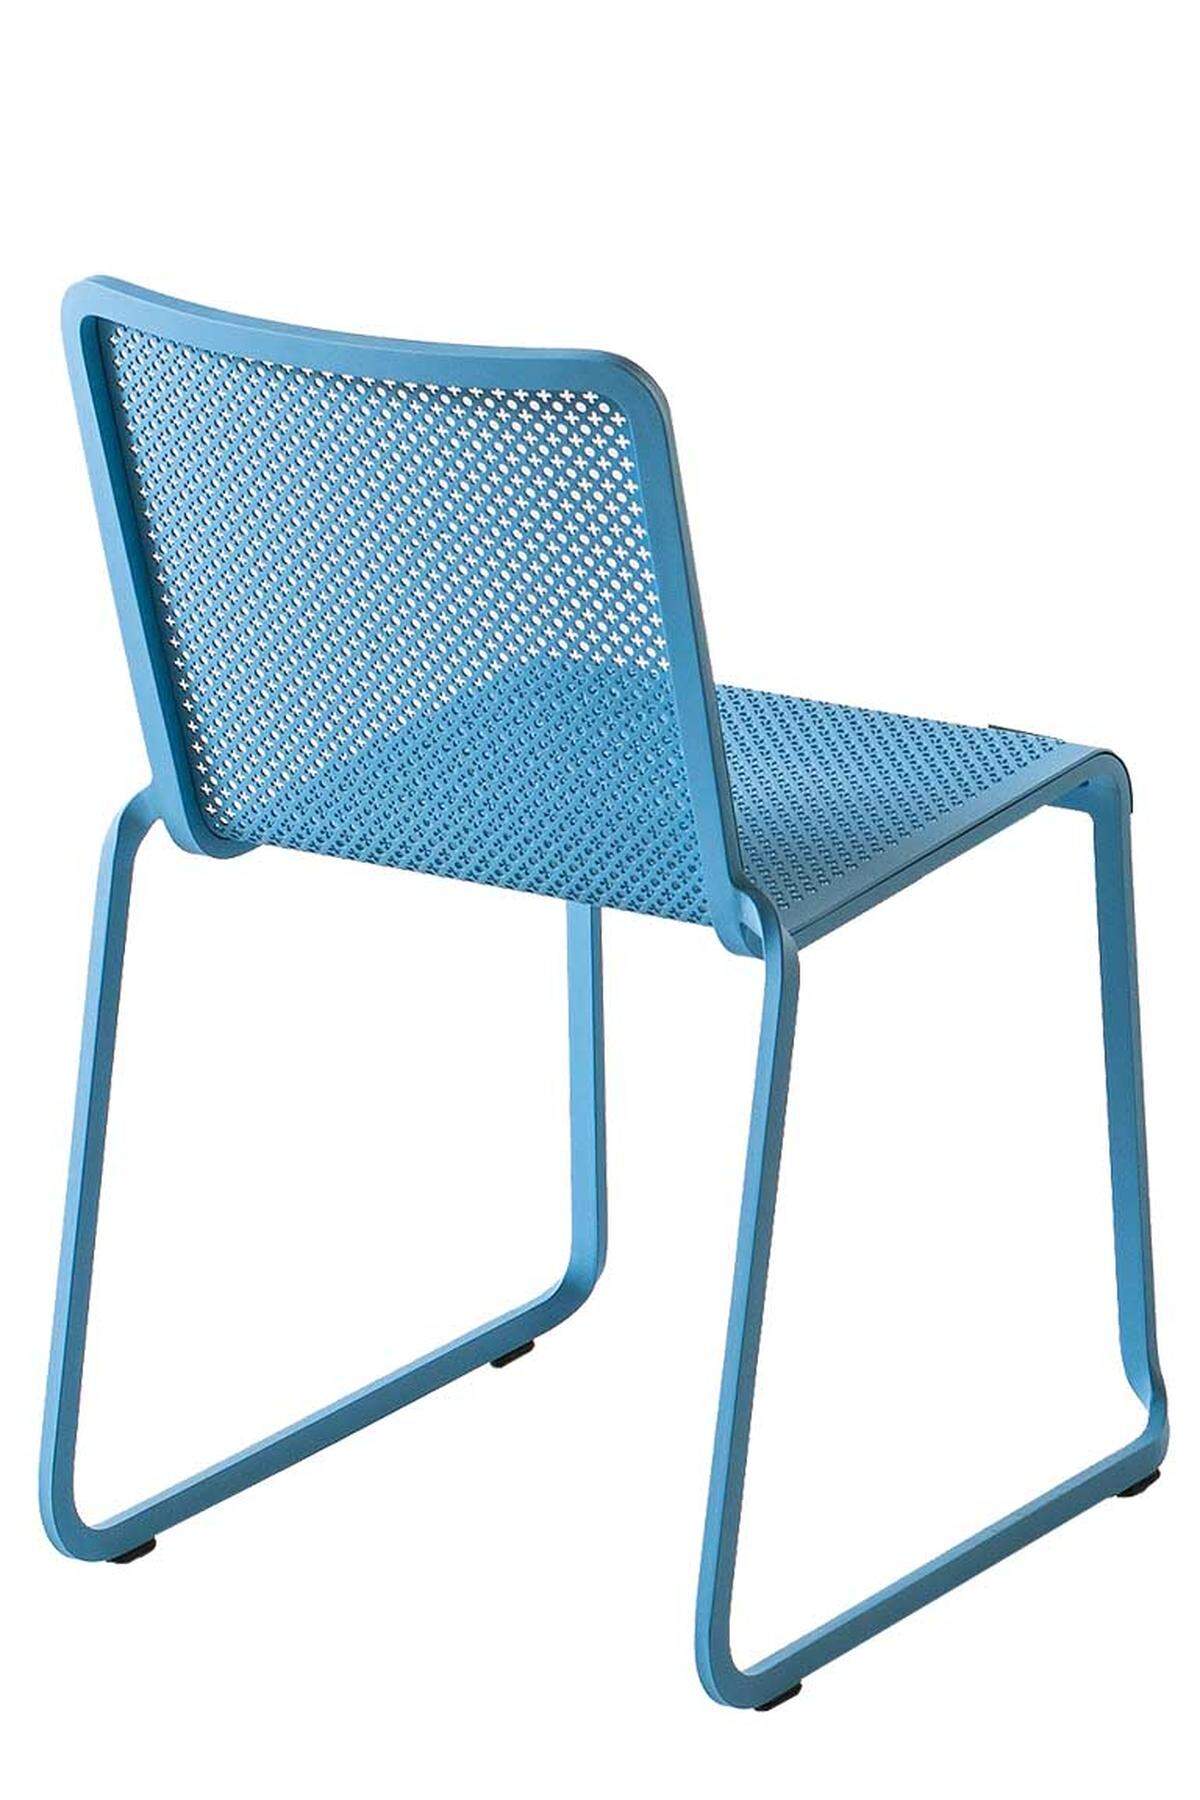 Stühle und Barhocker der Serie „Oxo“ aus moderner Metallbiegetechnologie, Design von Xavier Lust, Preis auf Anfrage, www.kristalia.it